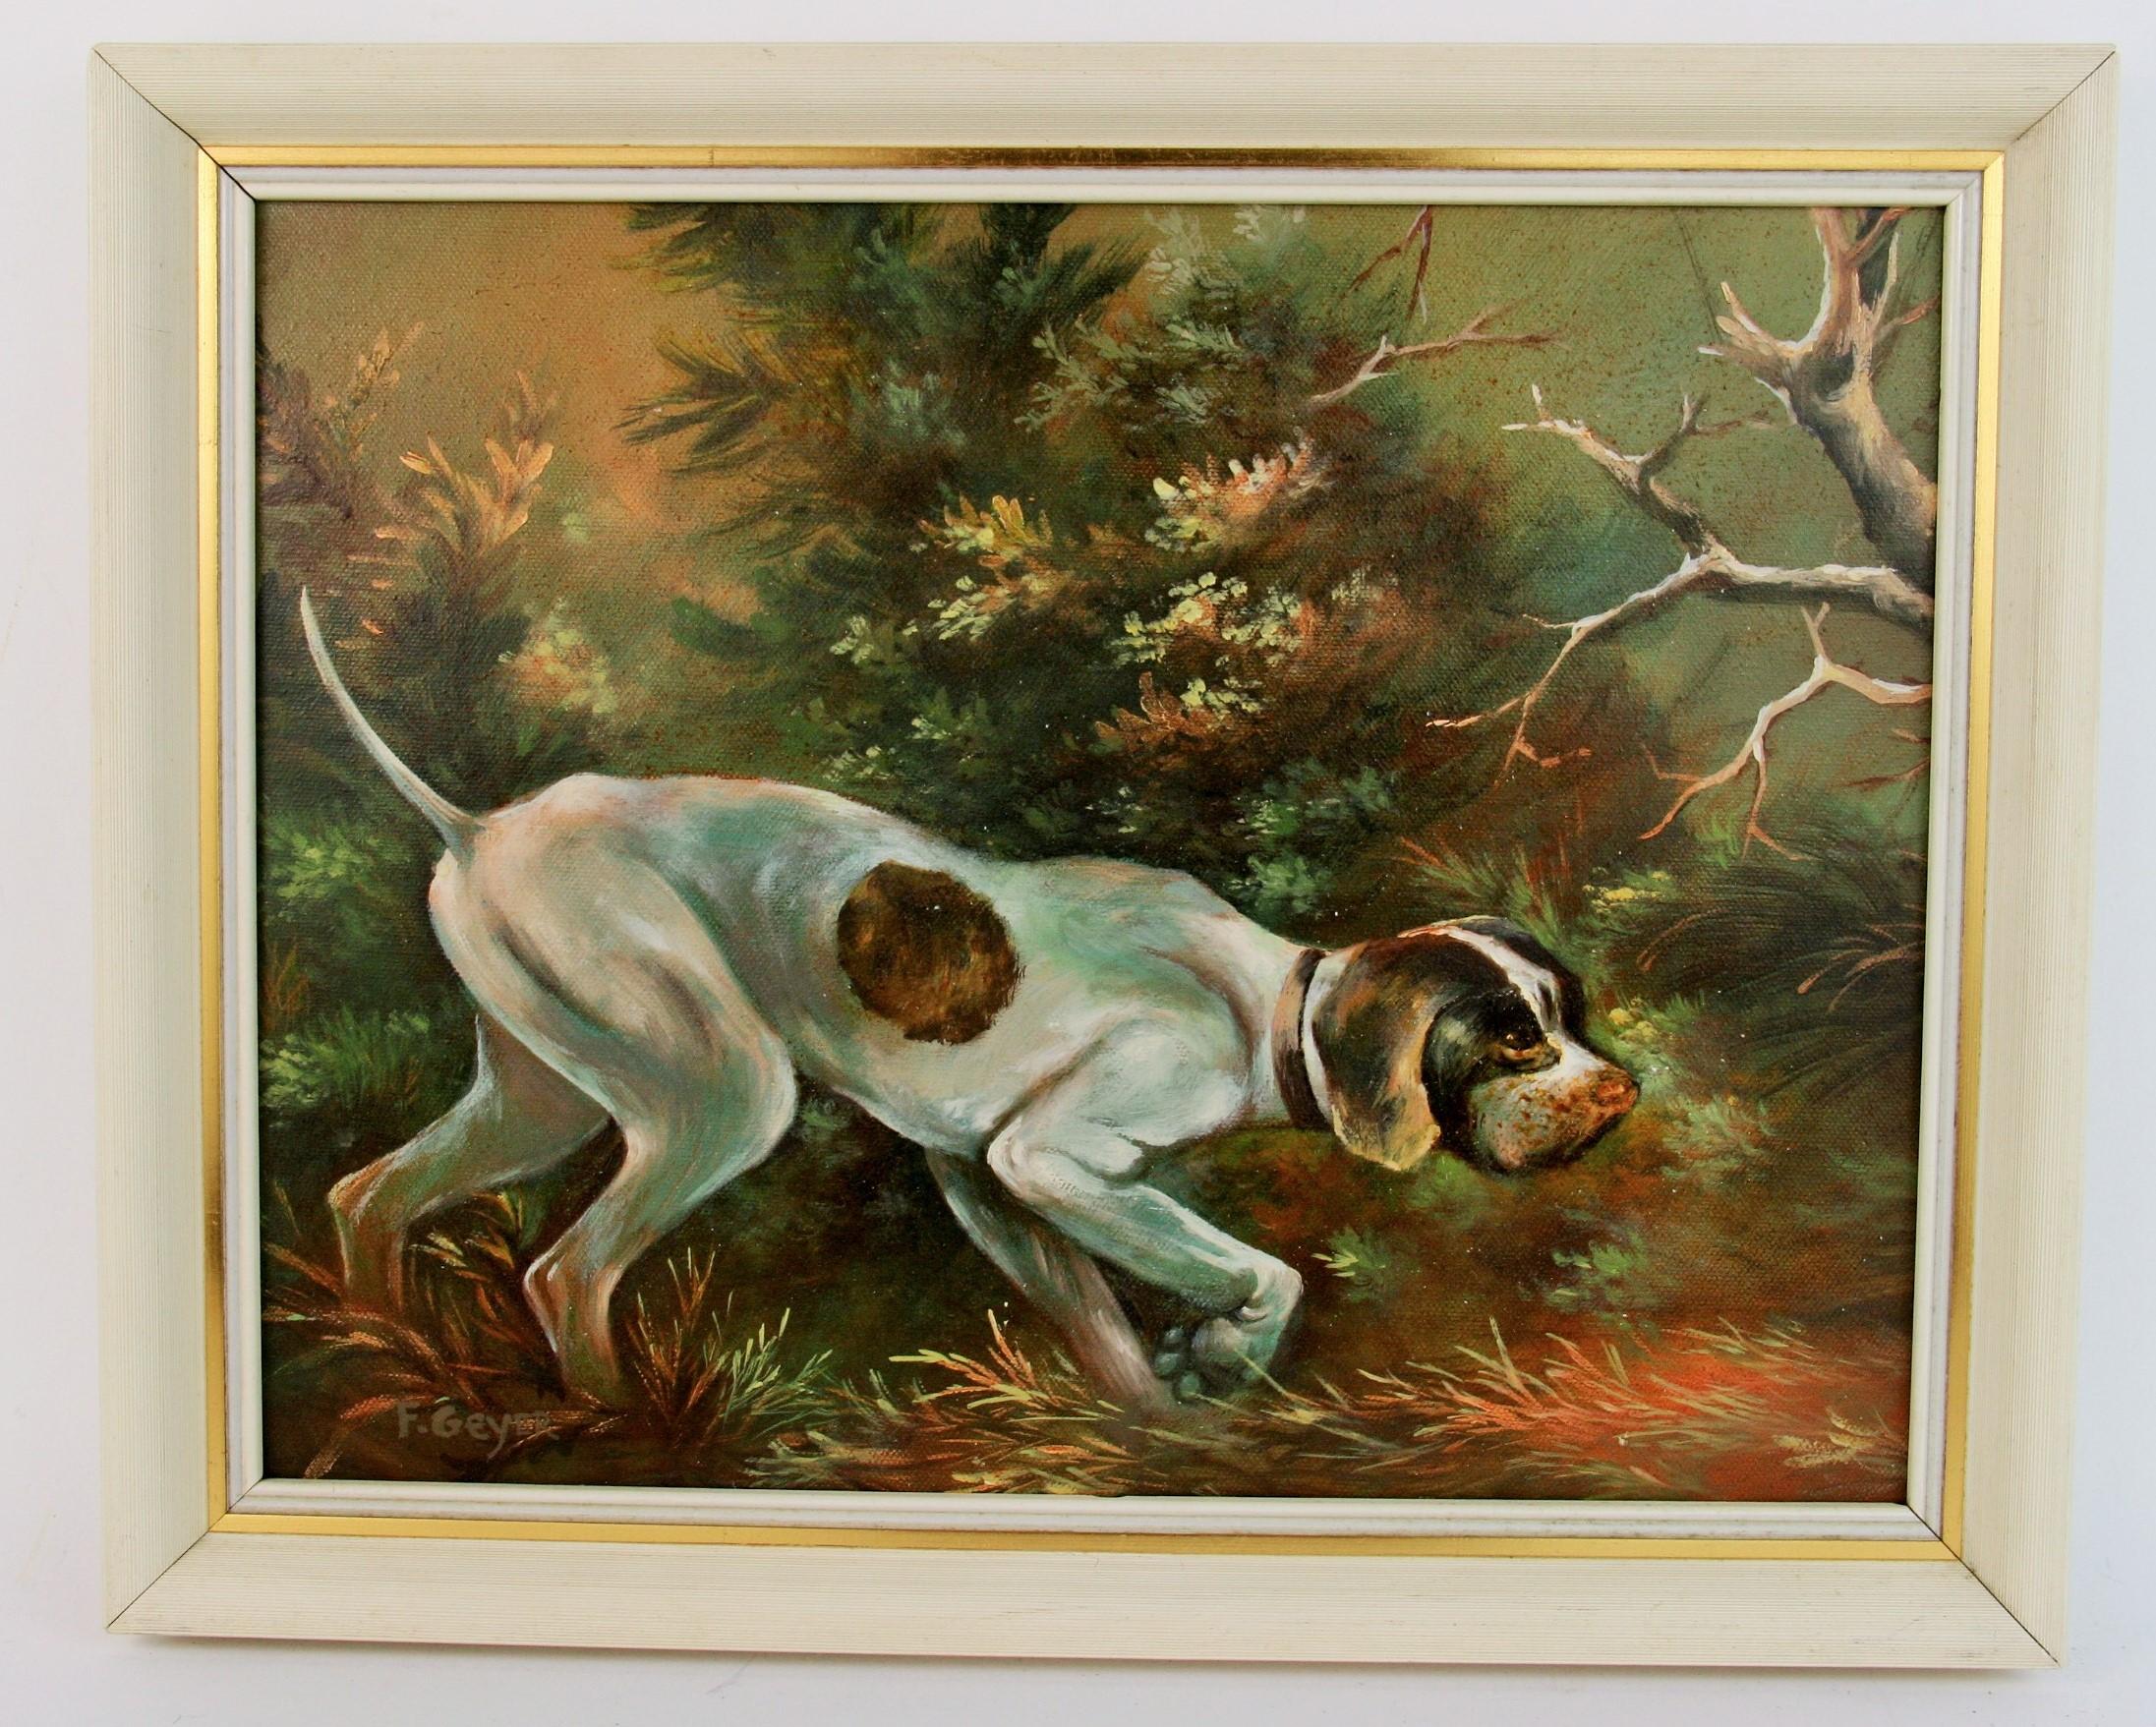 3302 Chien de chasse huile sur toile appliquée sur carton présentée dans un cadre en bois
Signé Geyer
Taille de l'image 10.25x13.5